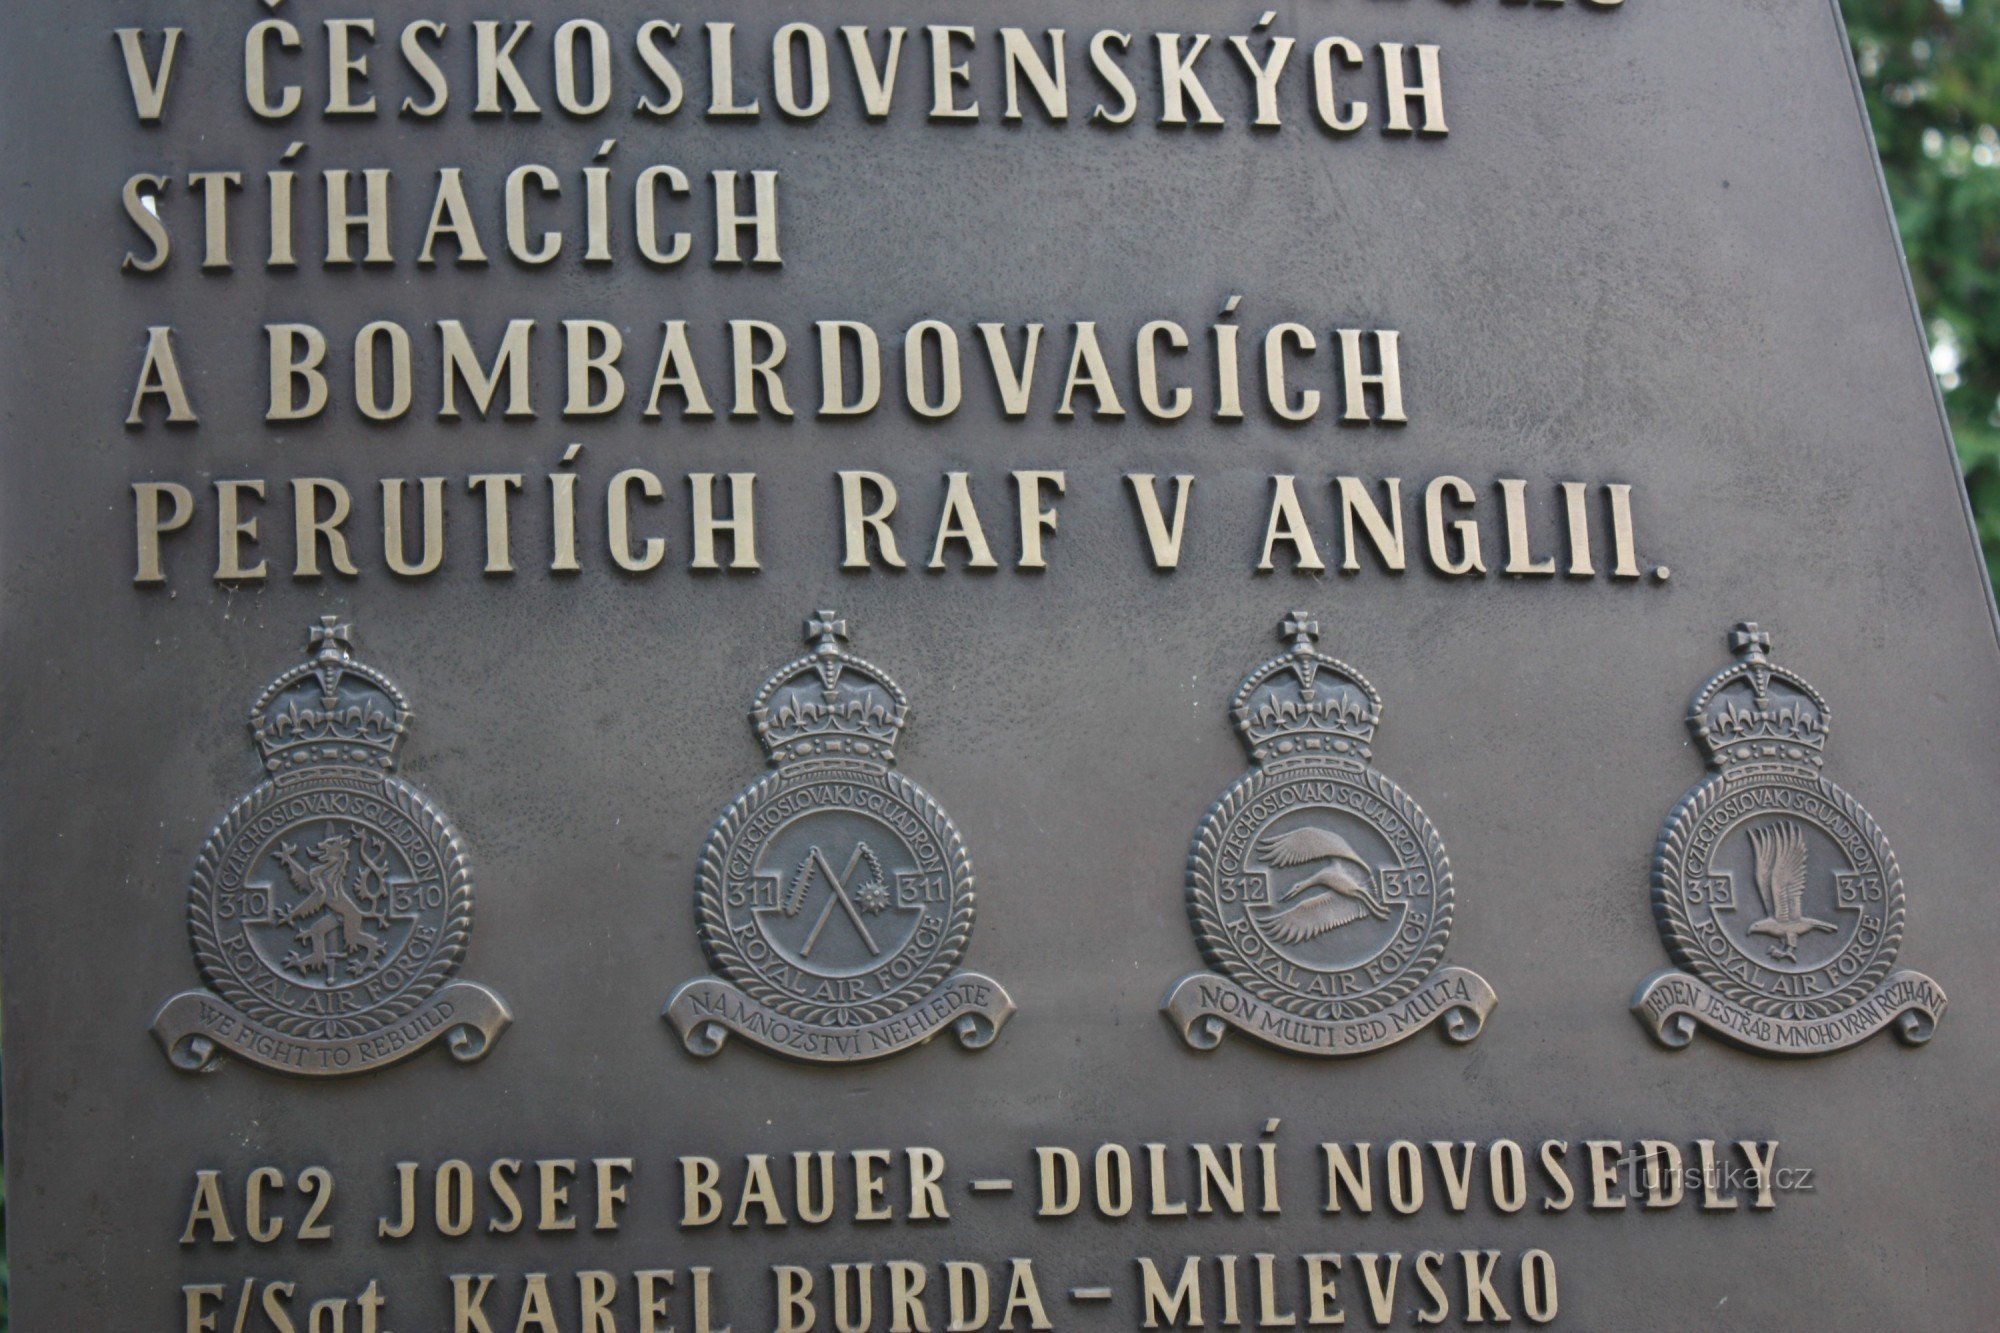 Emblematy czechosłowackich 310, 311,312,313, XNUMX, XNUMX dywizjonów RAF